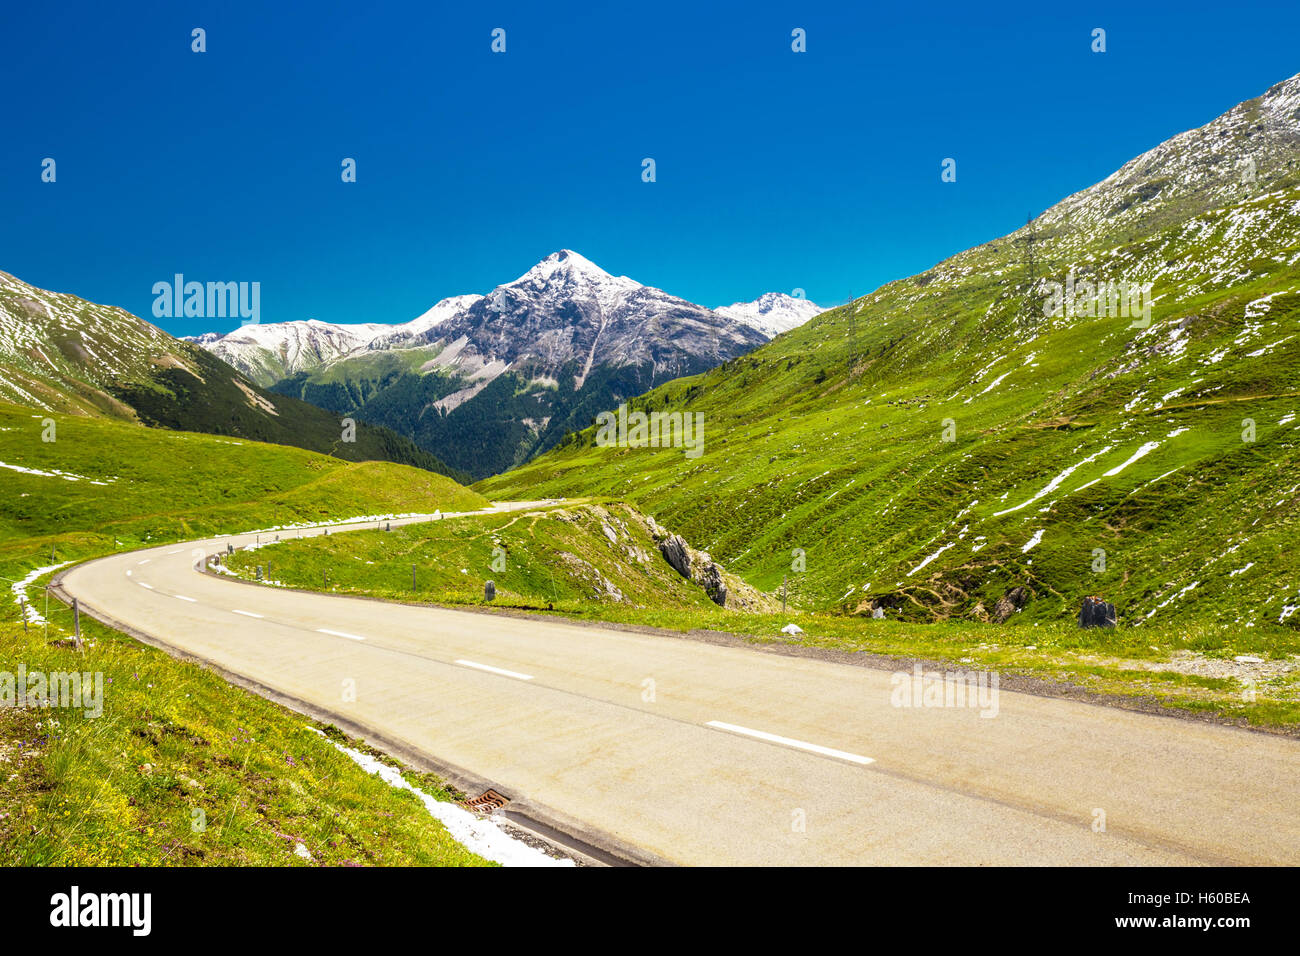 Route de montagne à col d'Albula - col de montagne suisse dans le canton des Grisons, à proximité de Sankt Moritz, Suisse. Banque D'Images